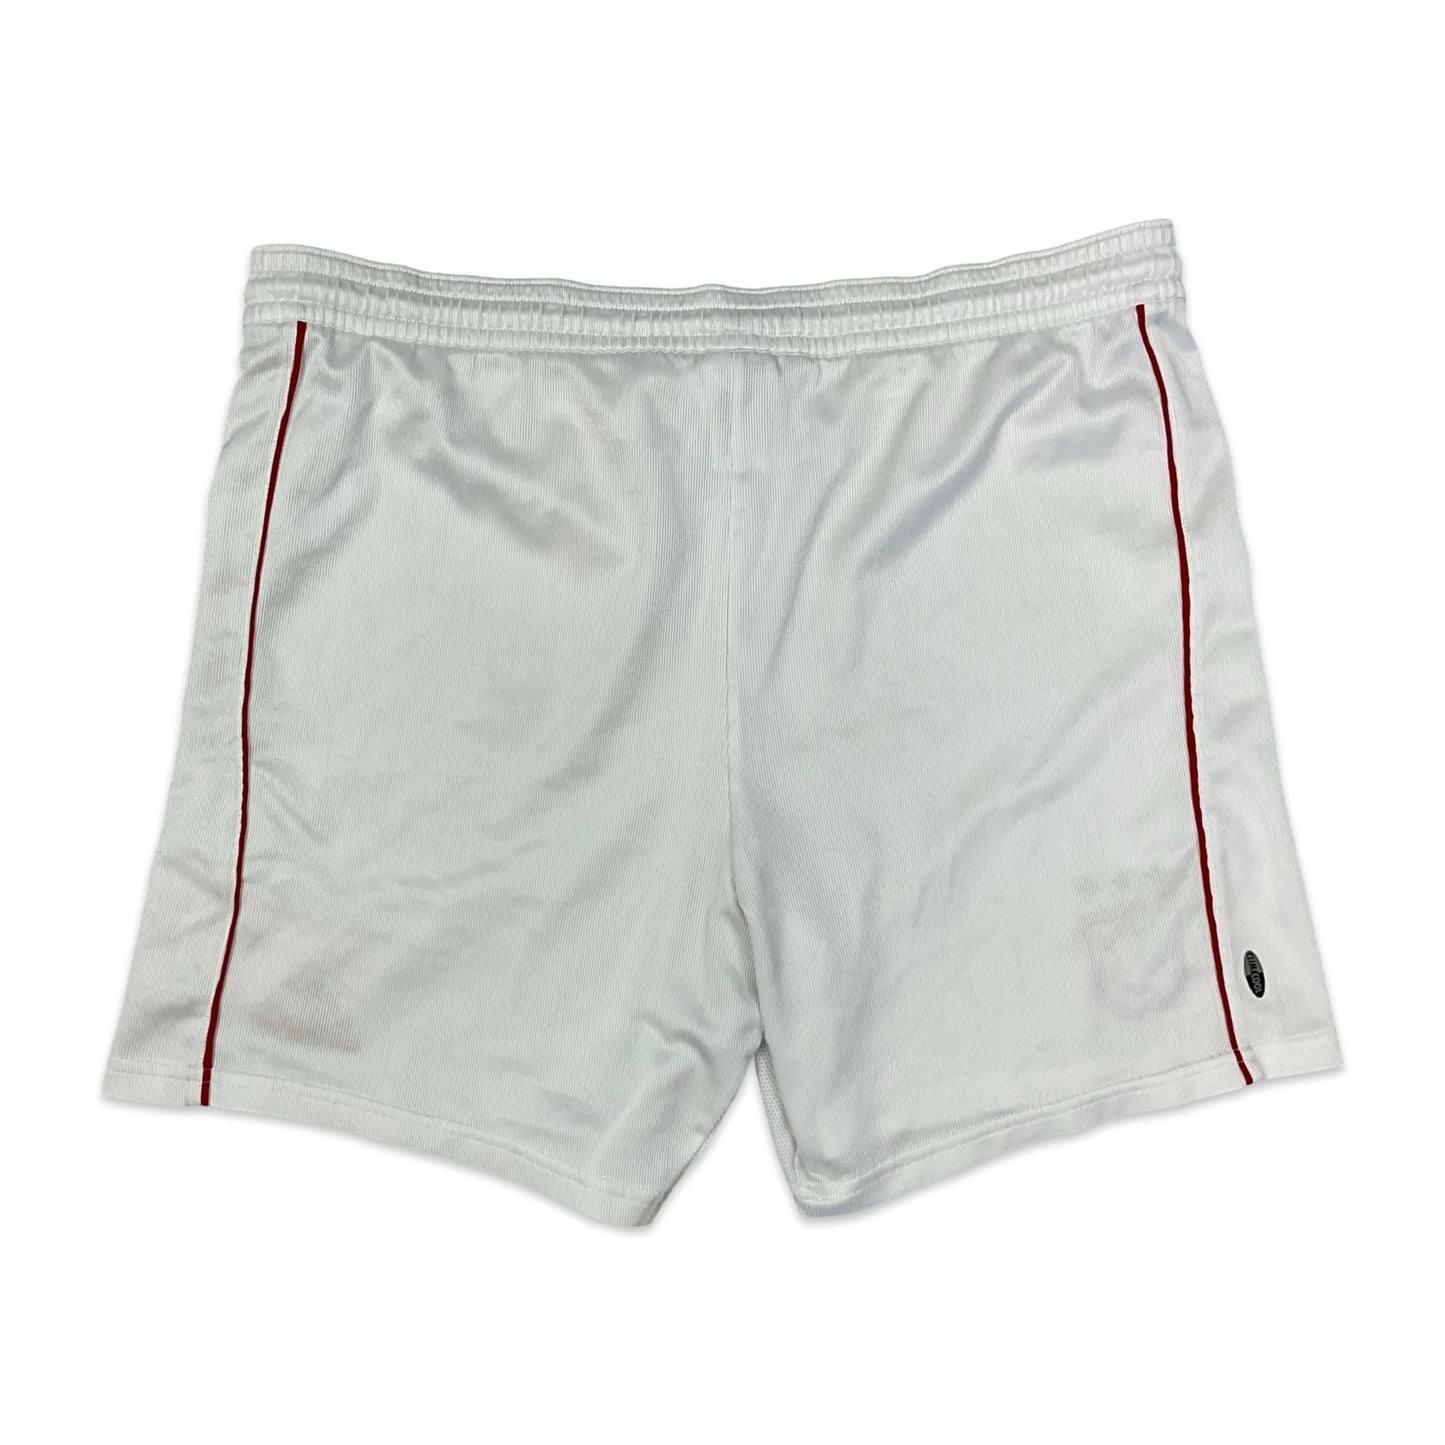 2004/05 Adidas Bayern Munich White Football Shorts L XL